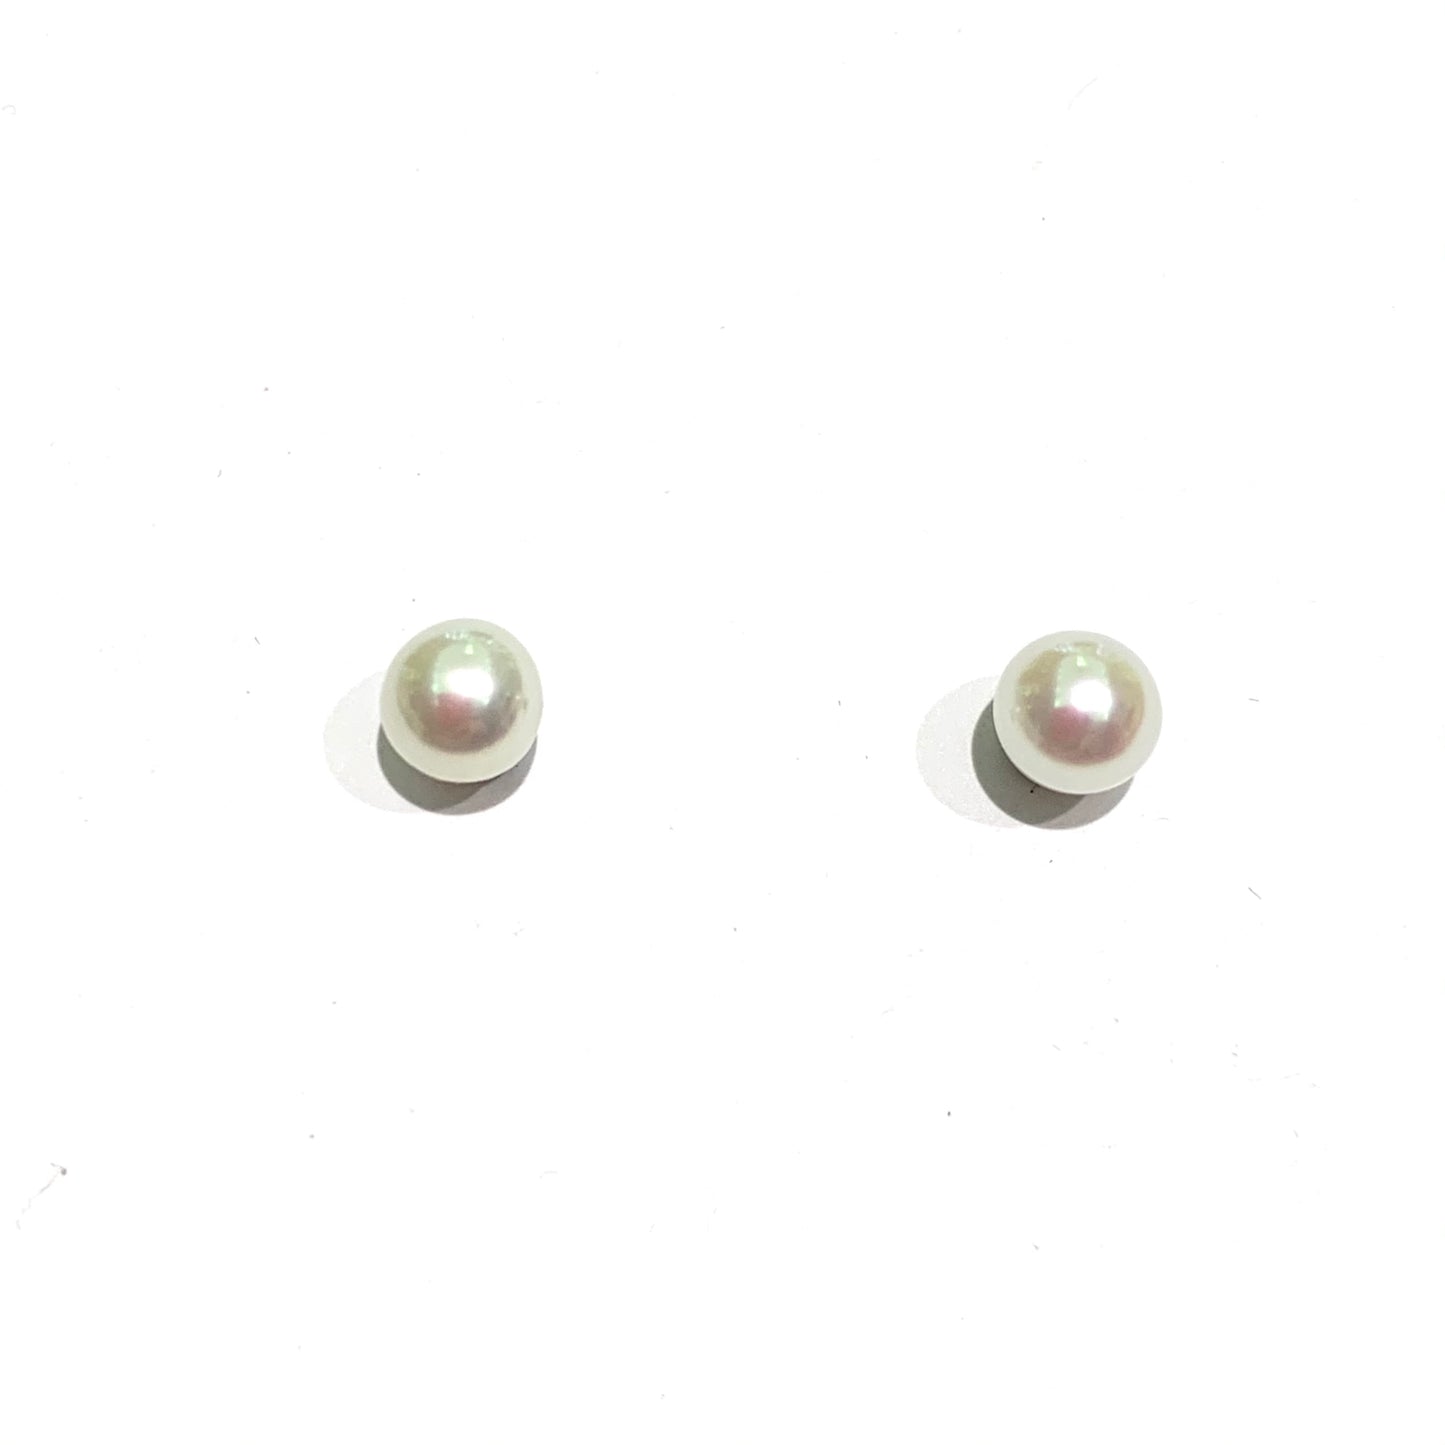 Orecchini in oro bianco 18kt con perle coltivate.  Dimensioni perla 0,4 cm.  Chiusura con farfalline.  Spedizione gratuita con confezione regalo. 